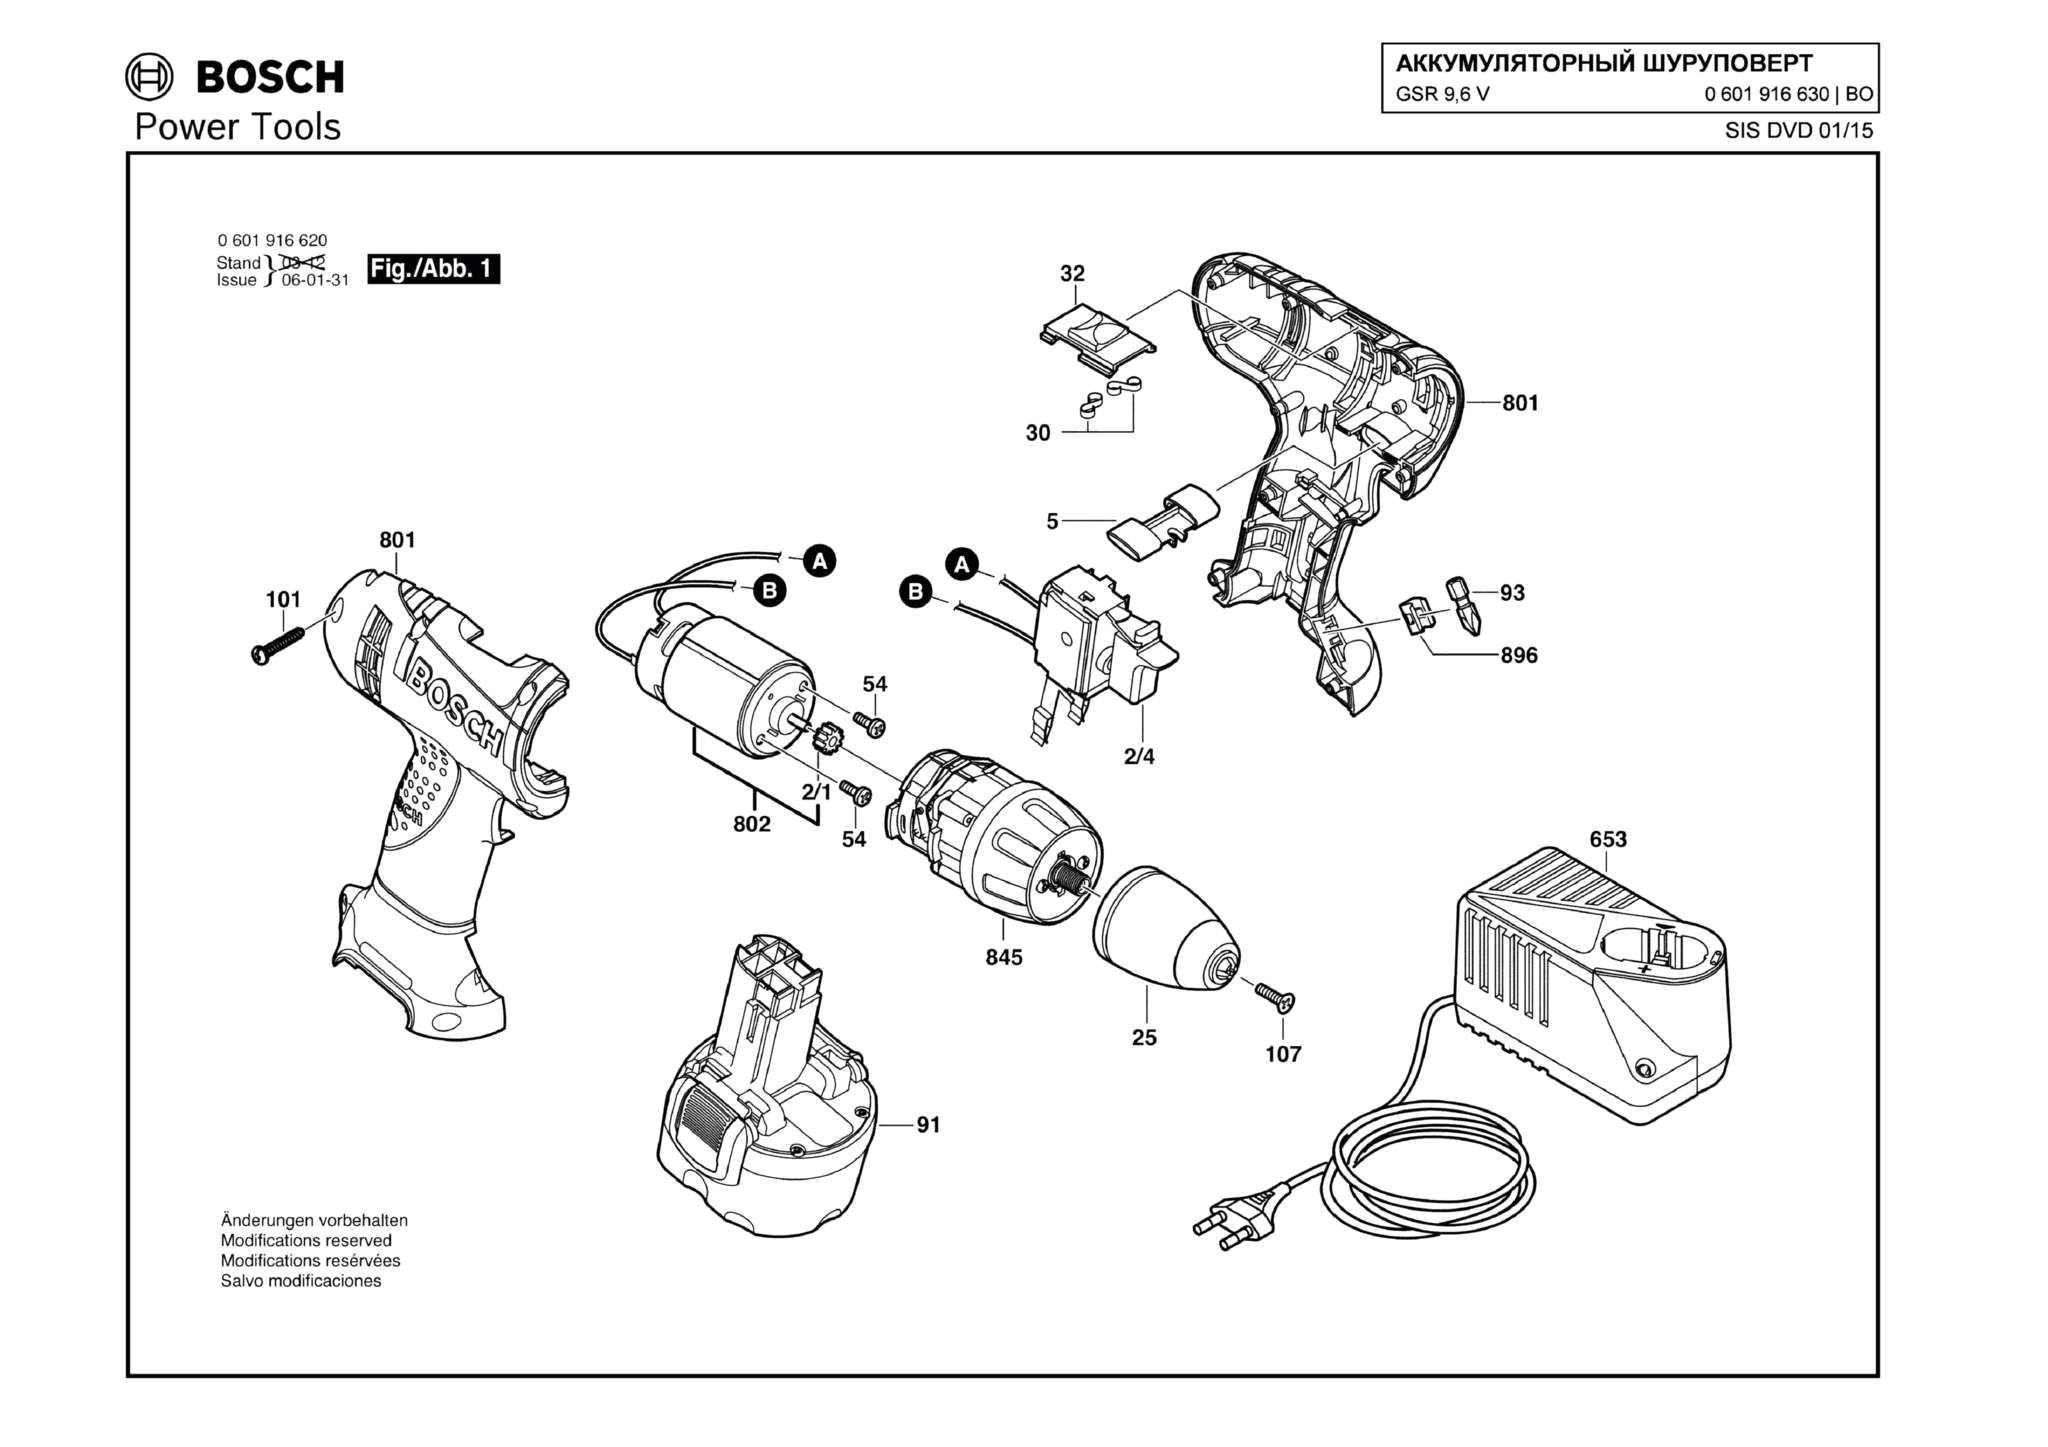 Запчасти, схема и деталировка Bosch GSR 9,6 V (ТИП 0601916630)